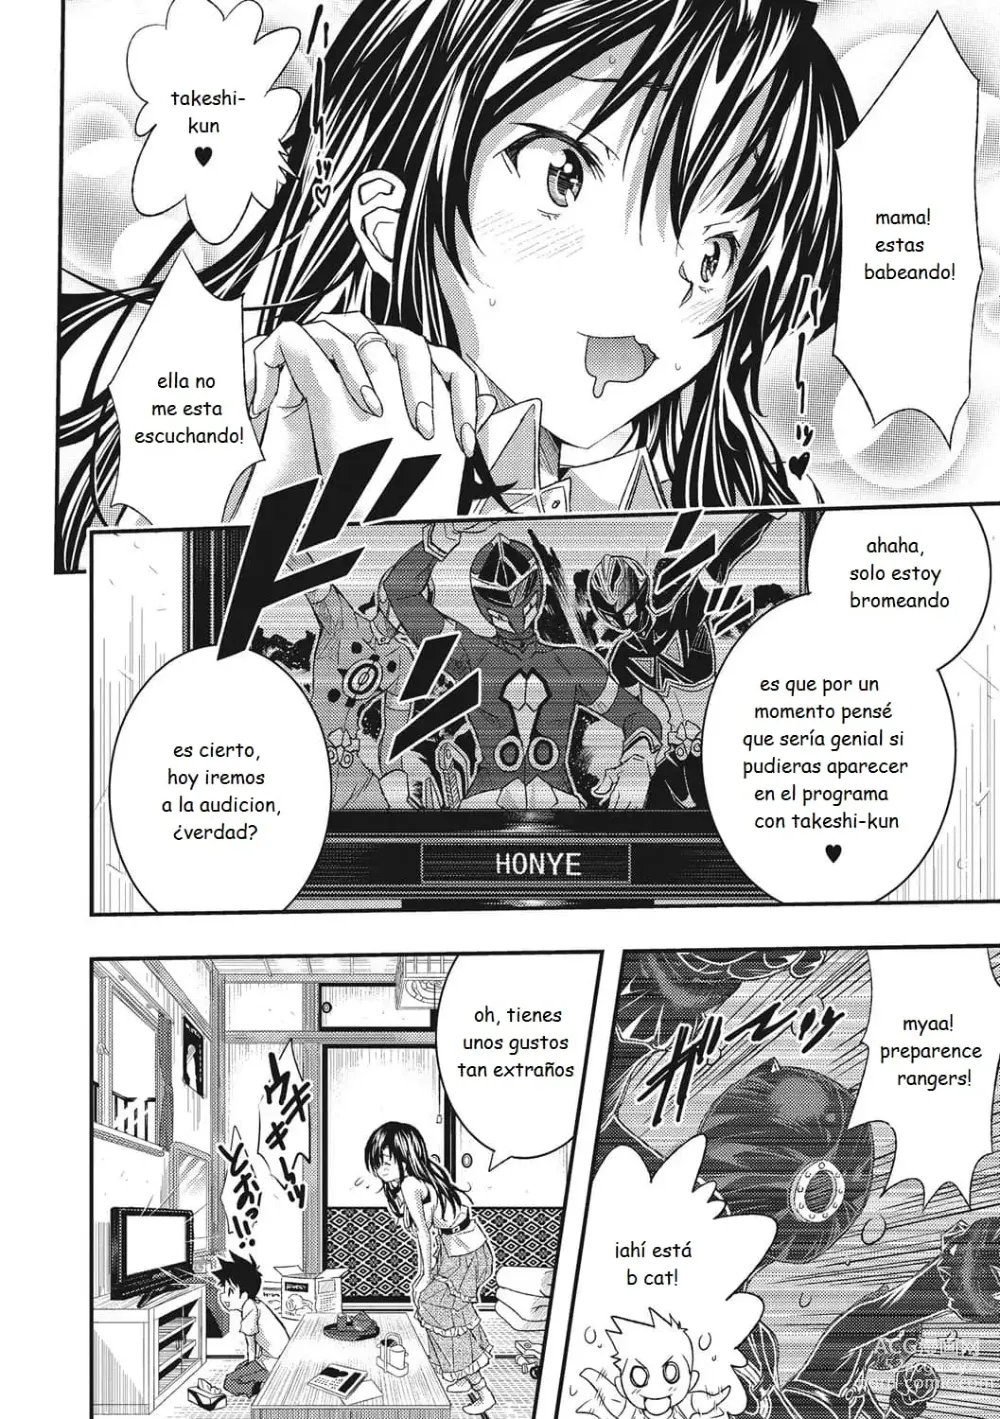 Page 6 of manga Ive Turned into a Child Actors Toy! - Me he convertido en el juguete de un niño actor